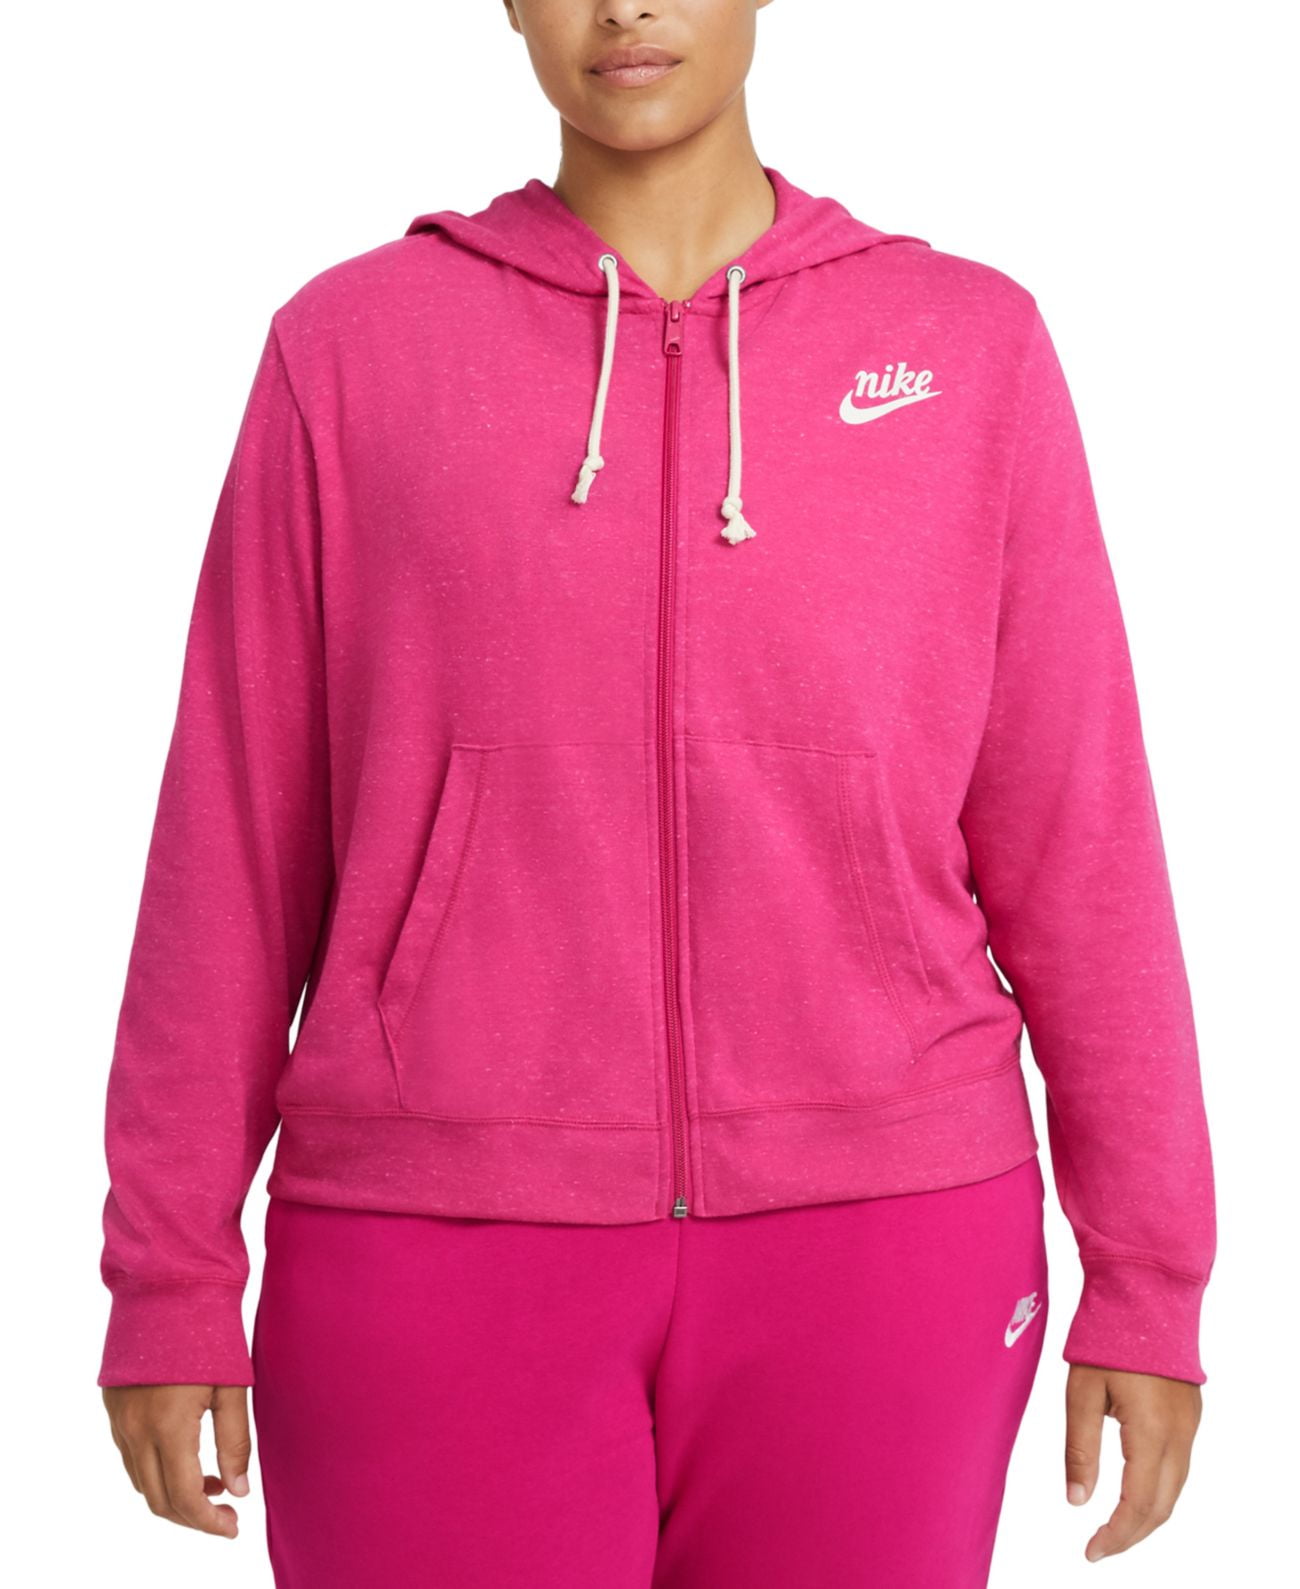 Nike Womens Plus Size Sportswear Gym - Walmart.com